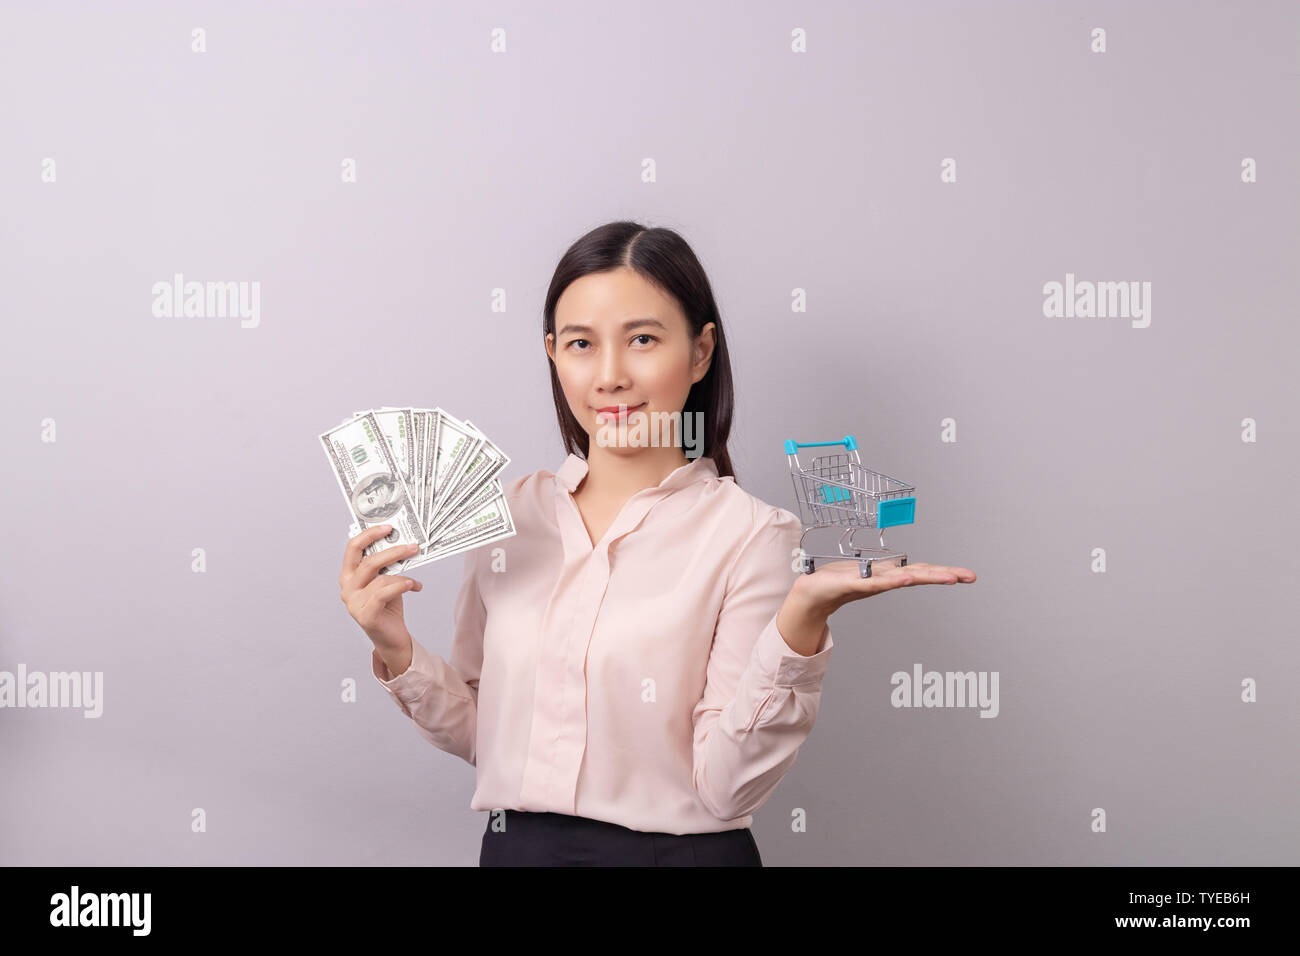 Einzelhandel Business Konzept, Asiatische schöne Frau holding Banknote Geld in die Hand und Warenkorb in der anderen Hand auf grauem Hintergrund Stockfoto